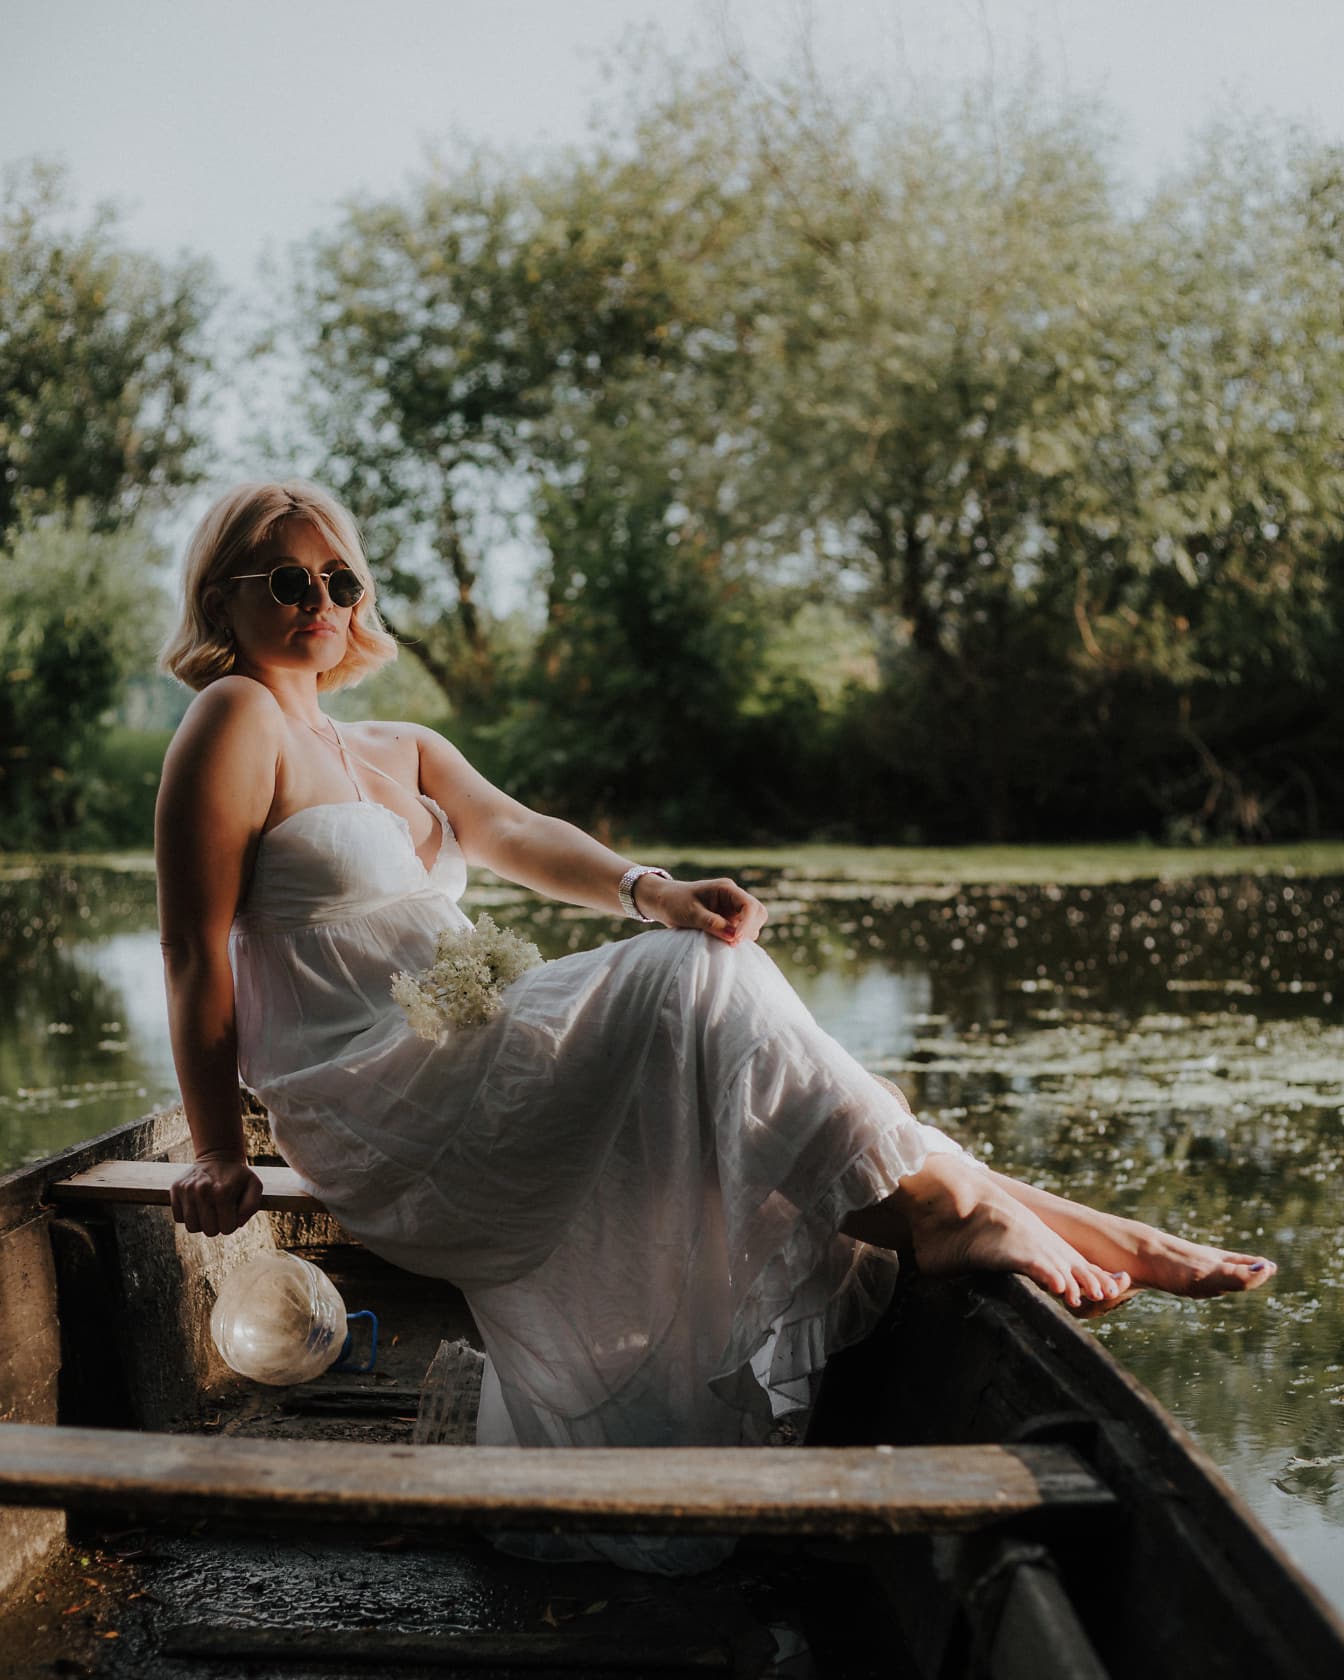 De bruid in een witte trouwjurk in landelijke stijl zit in een boot op het water